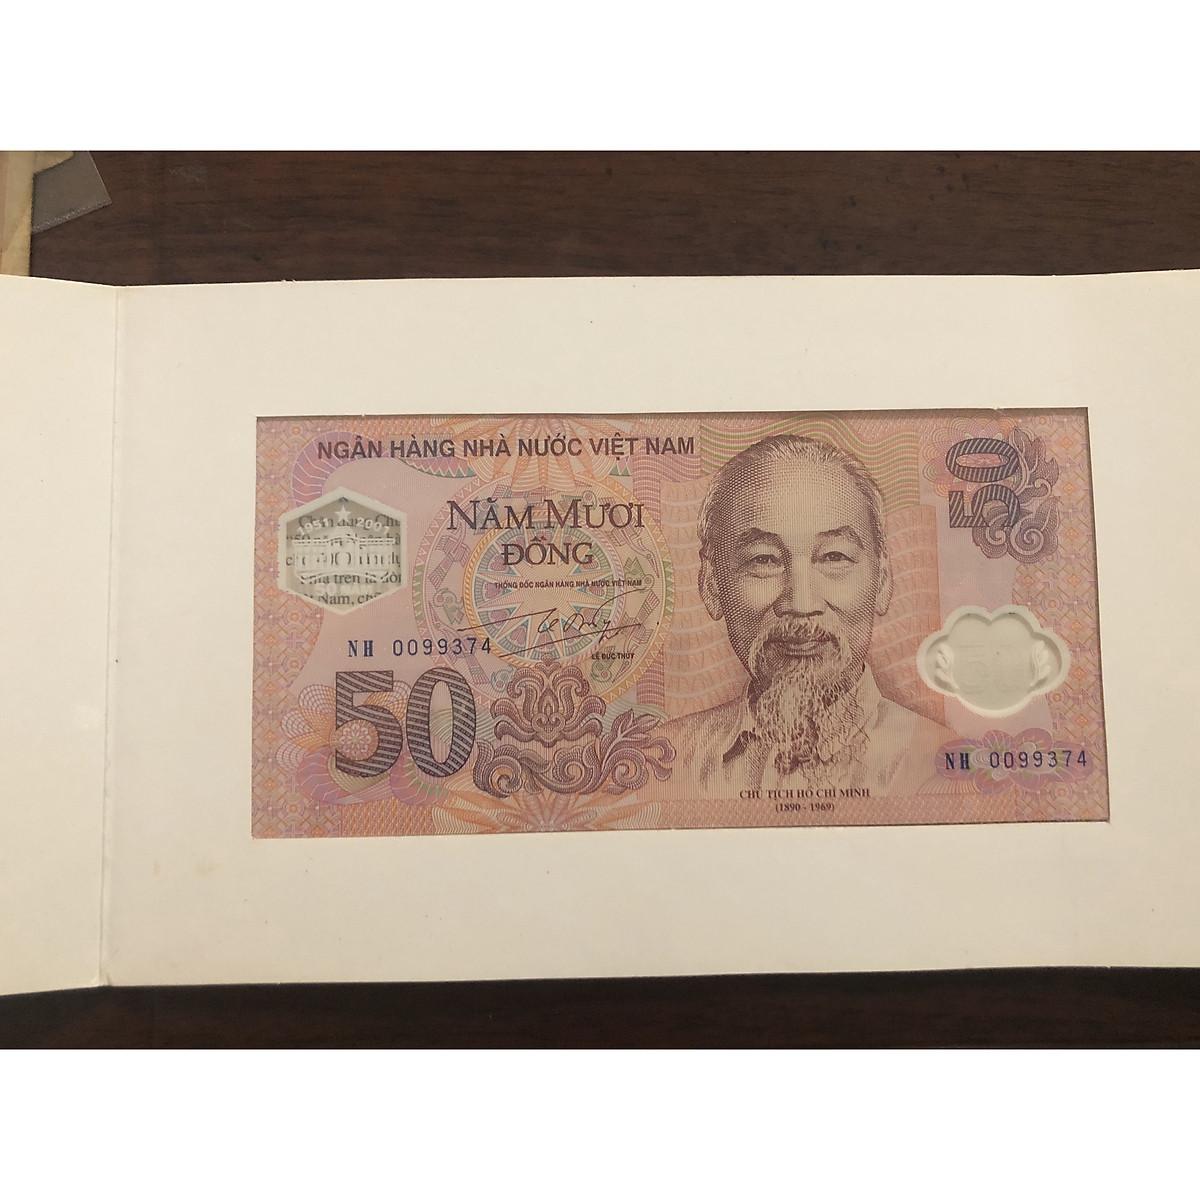 Tờ tiền 50 đồng kỷ niệm thành lập ngân hàng, tờ polymer đầu tiên của Việt Nam 2001, phù hợp sưu tập, lưu niệm